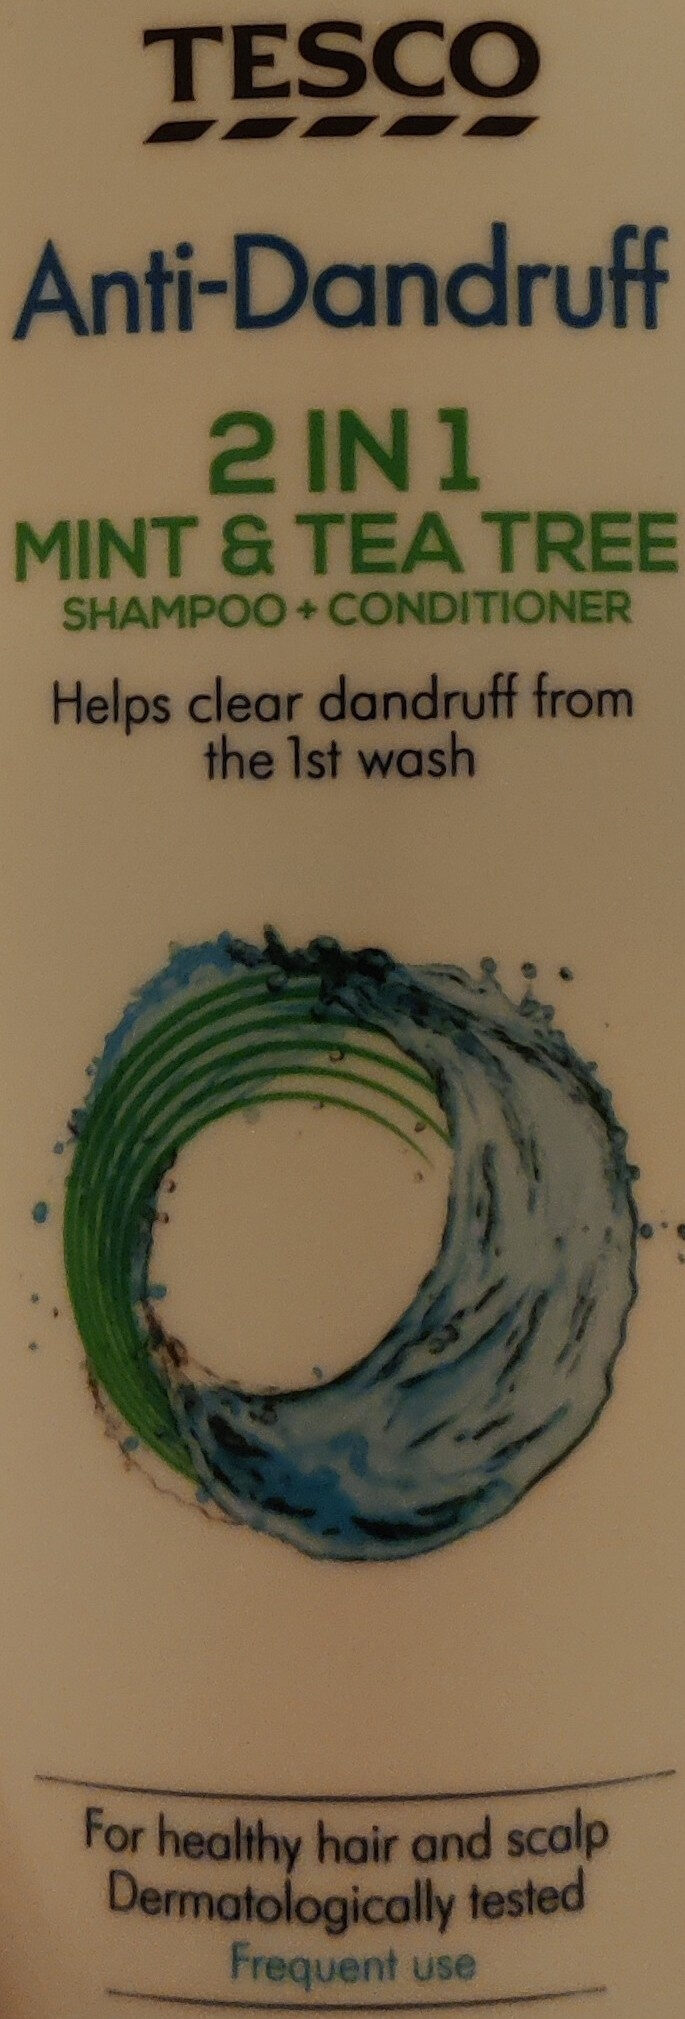 Anti-Dandruff 2 in 1 Mint & Tea Tree Shampoo + Conditioner - Produto - en